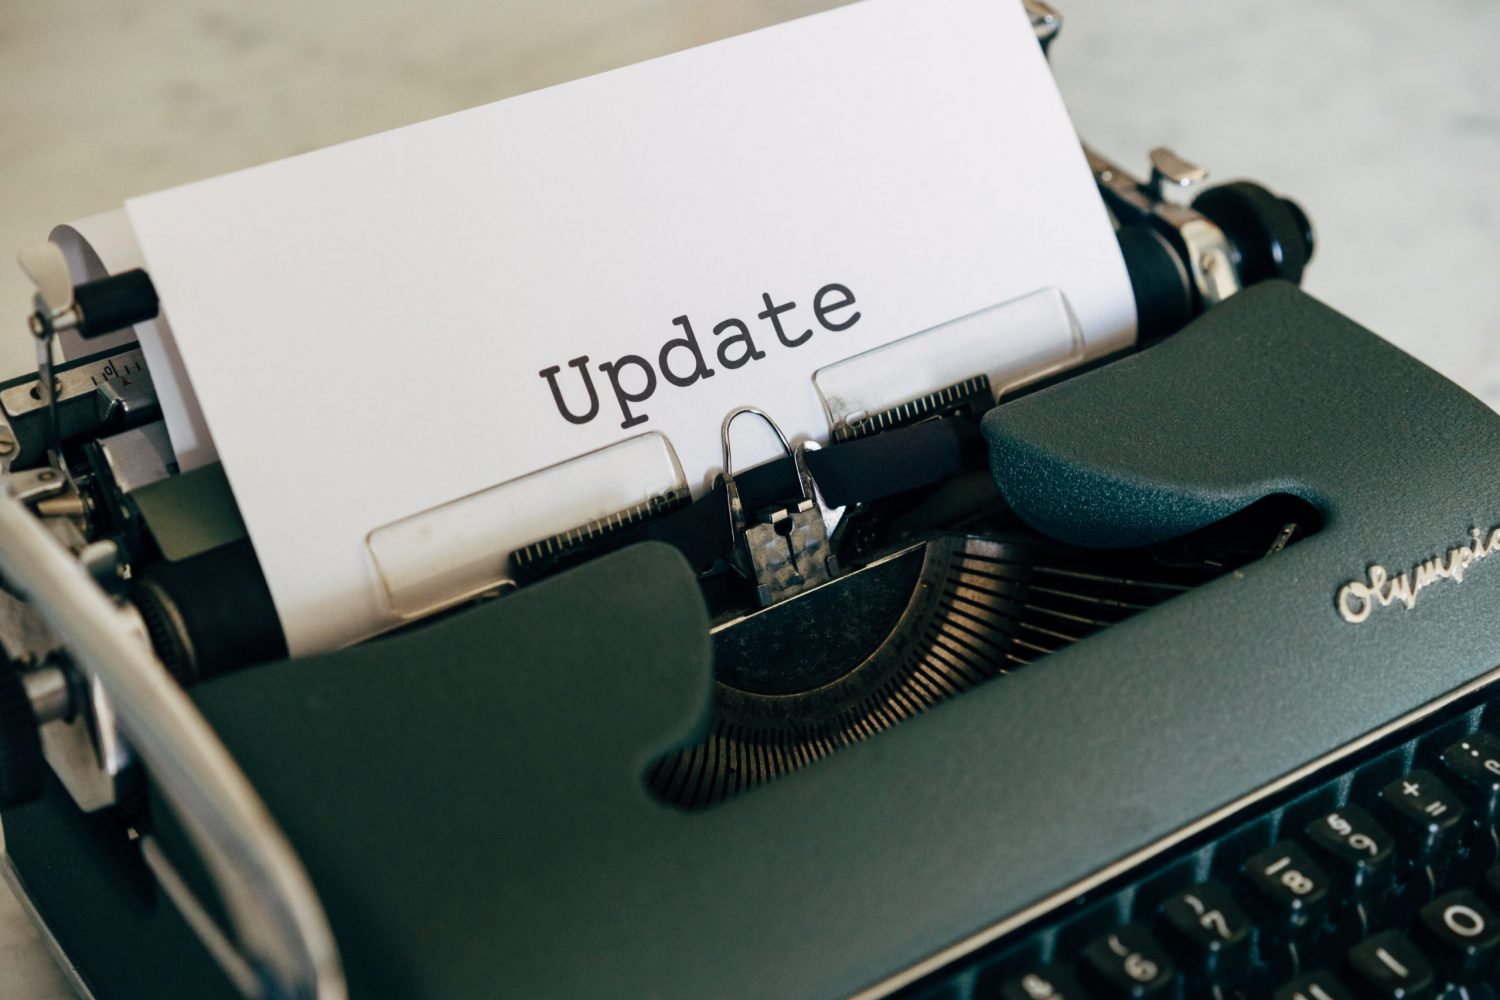 Eine schöne Schreibmaschine mit einem eingespanntem Blatt, auf dem das Wort "Update" steht.